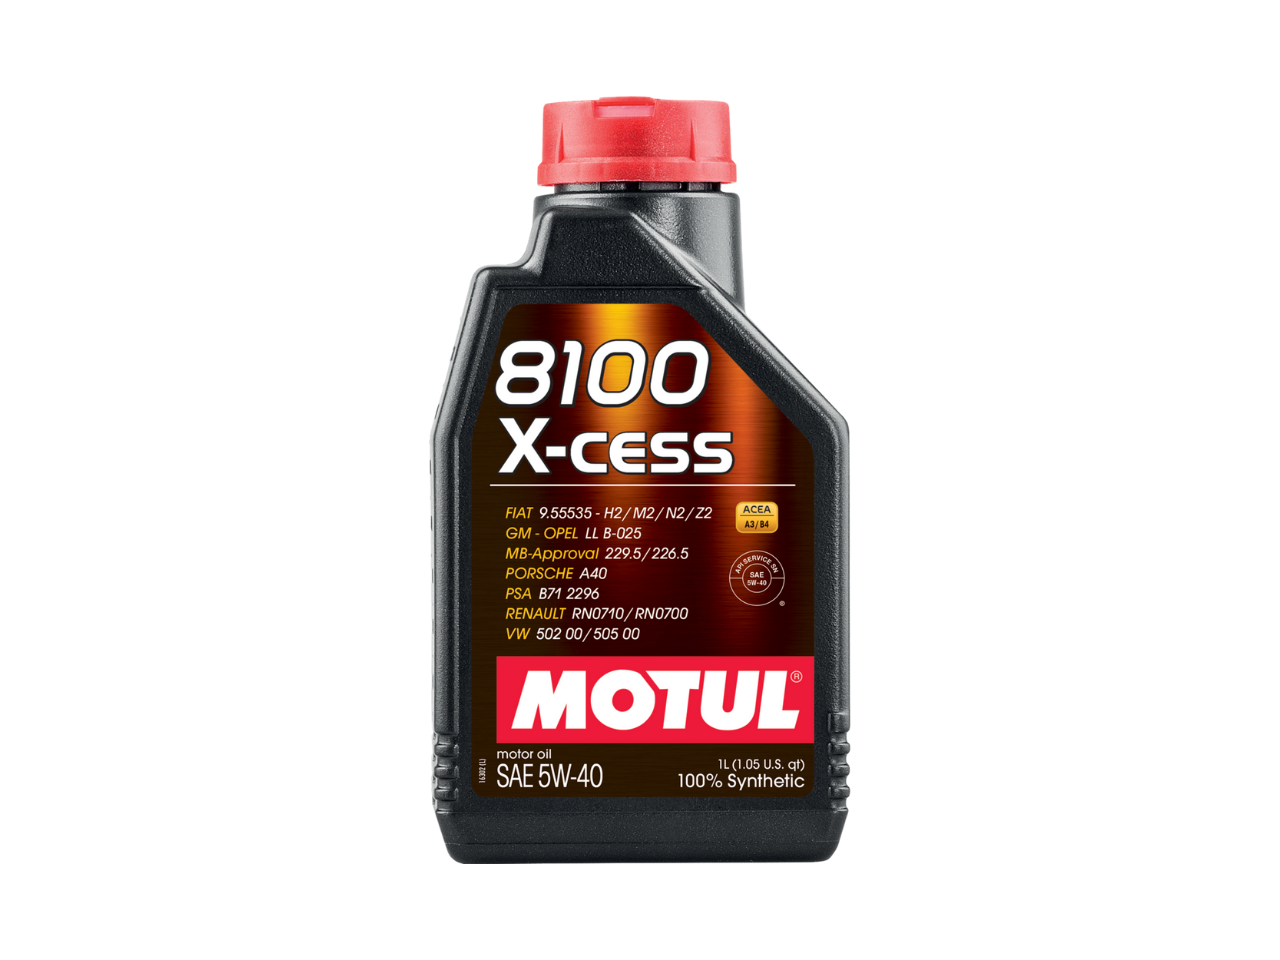 Купить недорого Моторное масло Motul 8100 X-cess в Москве